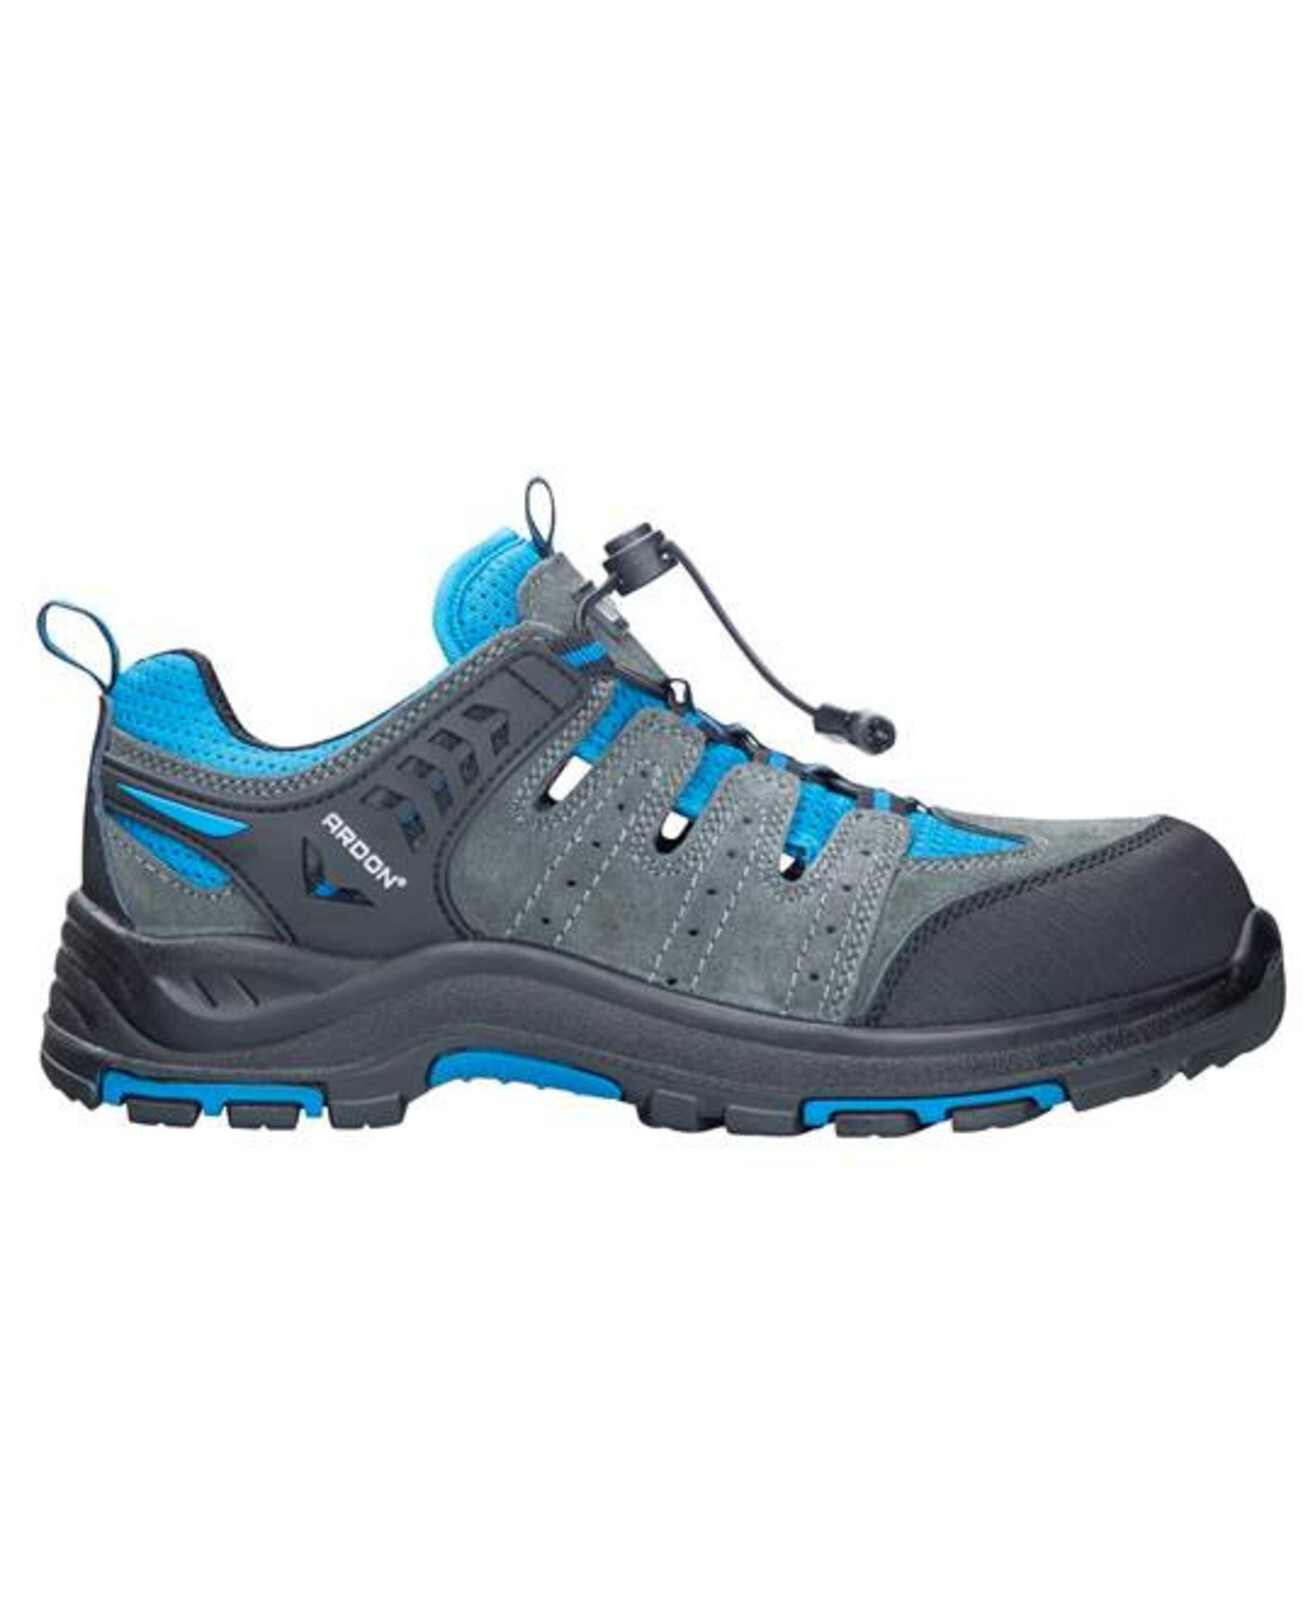 Bezpečnostná obuv ARDON®TRIMMER S1P  - veľkosť: 45, farba: sivá/modrá